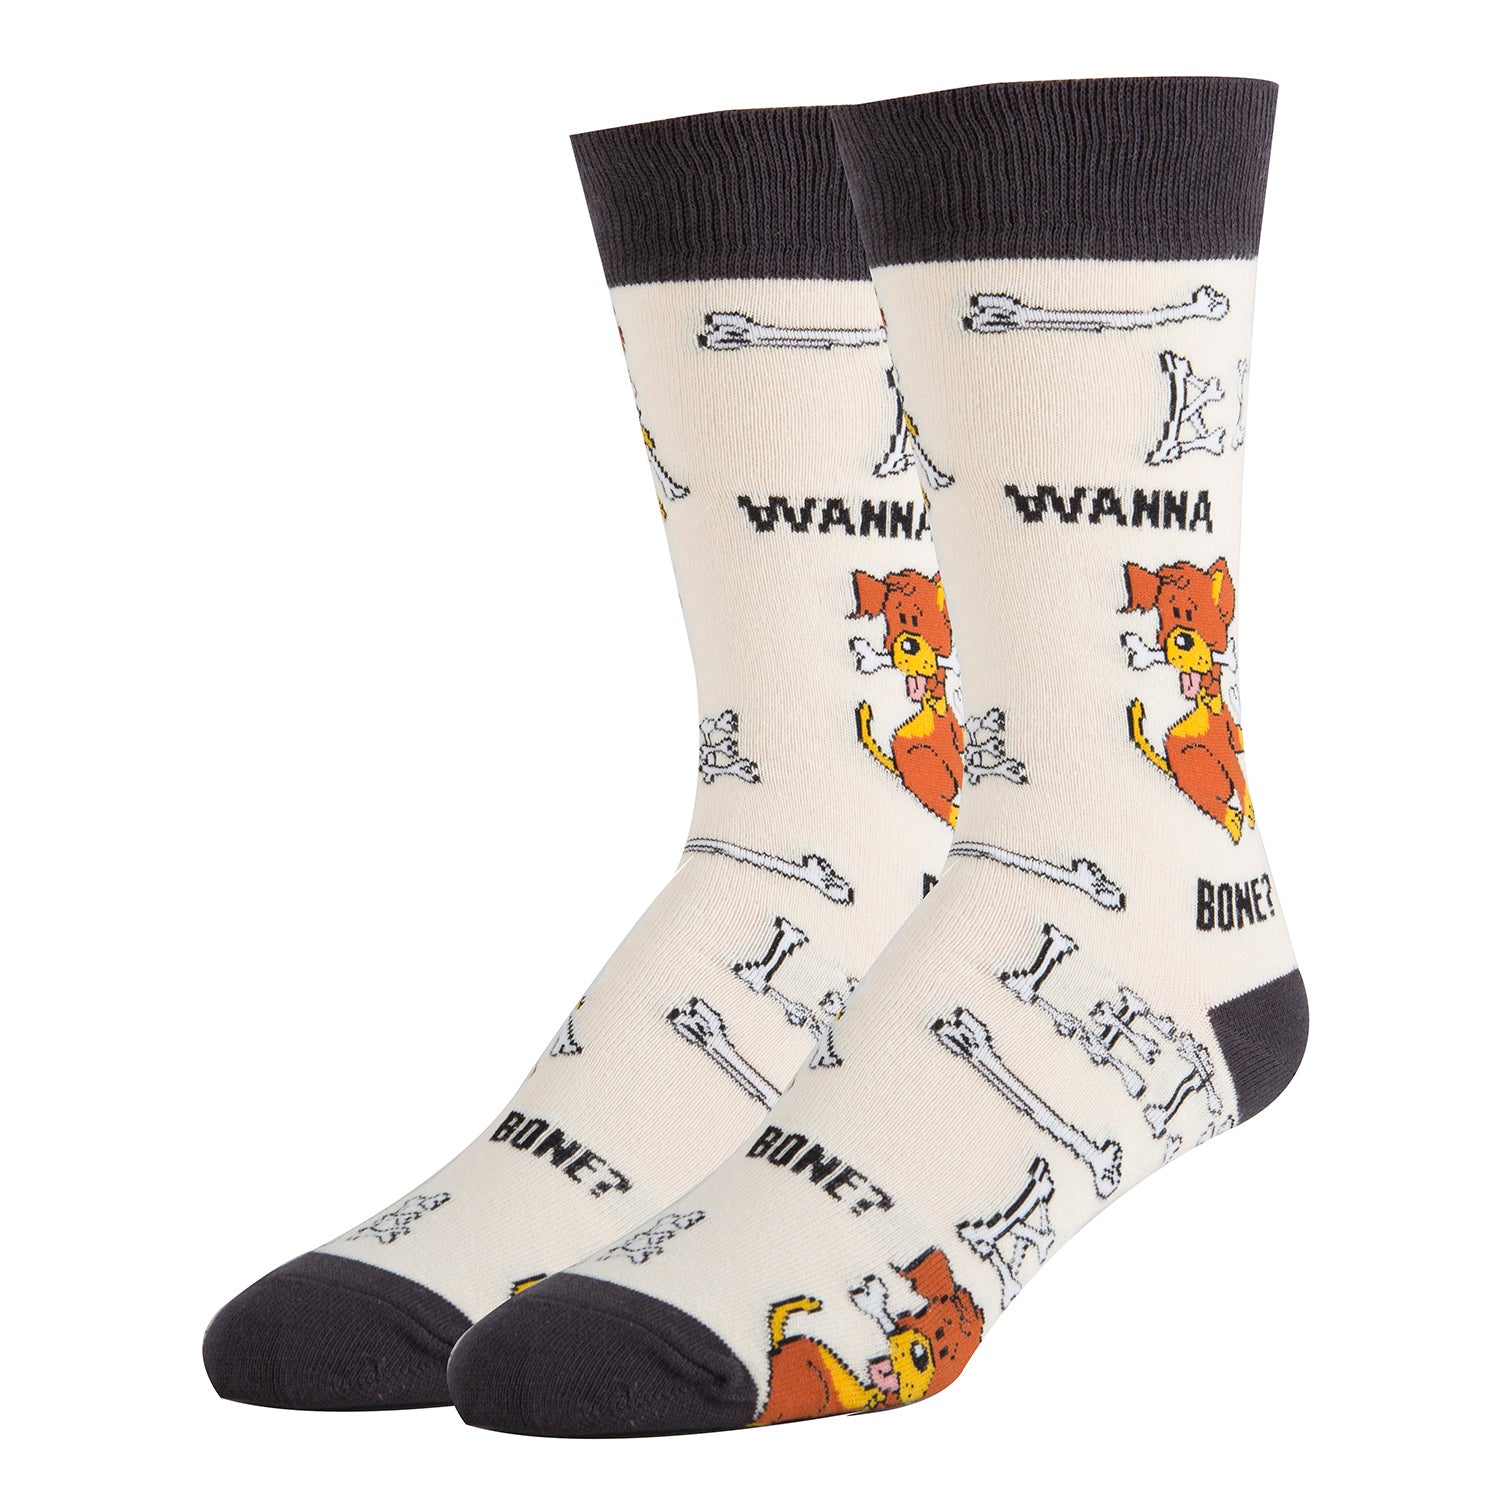 Wanna Bone Socks | Sassy Crew Socks For Men